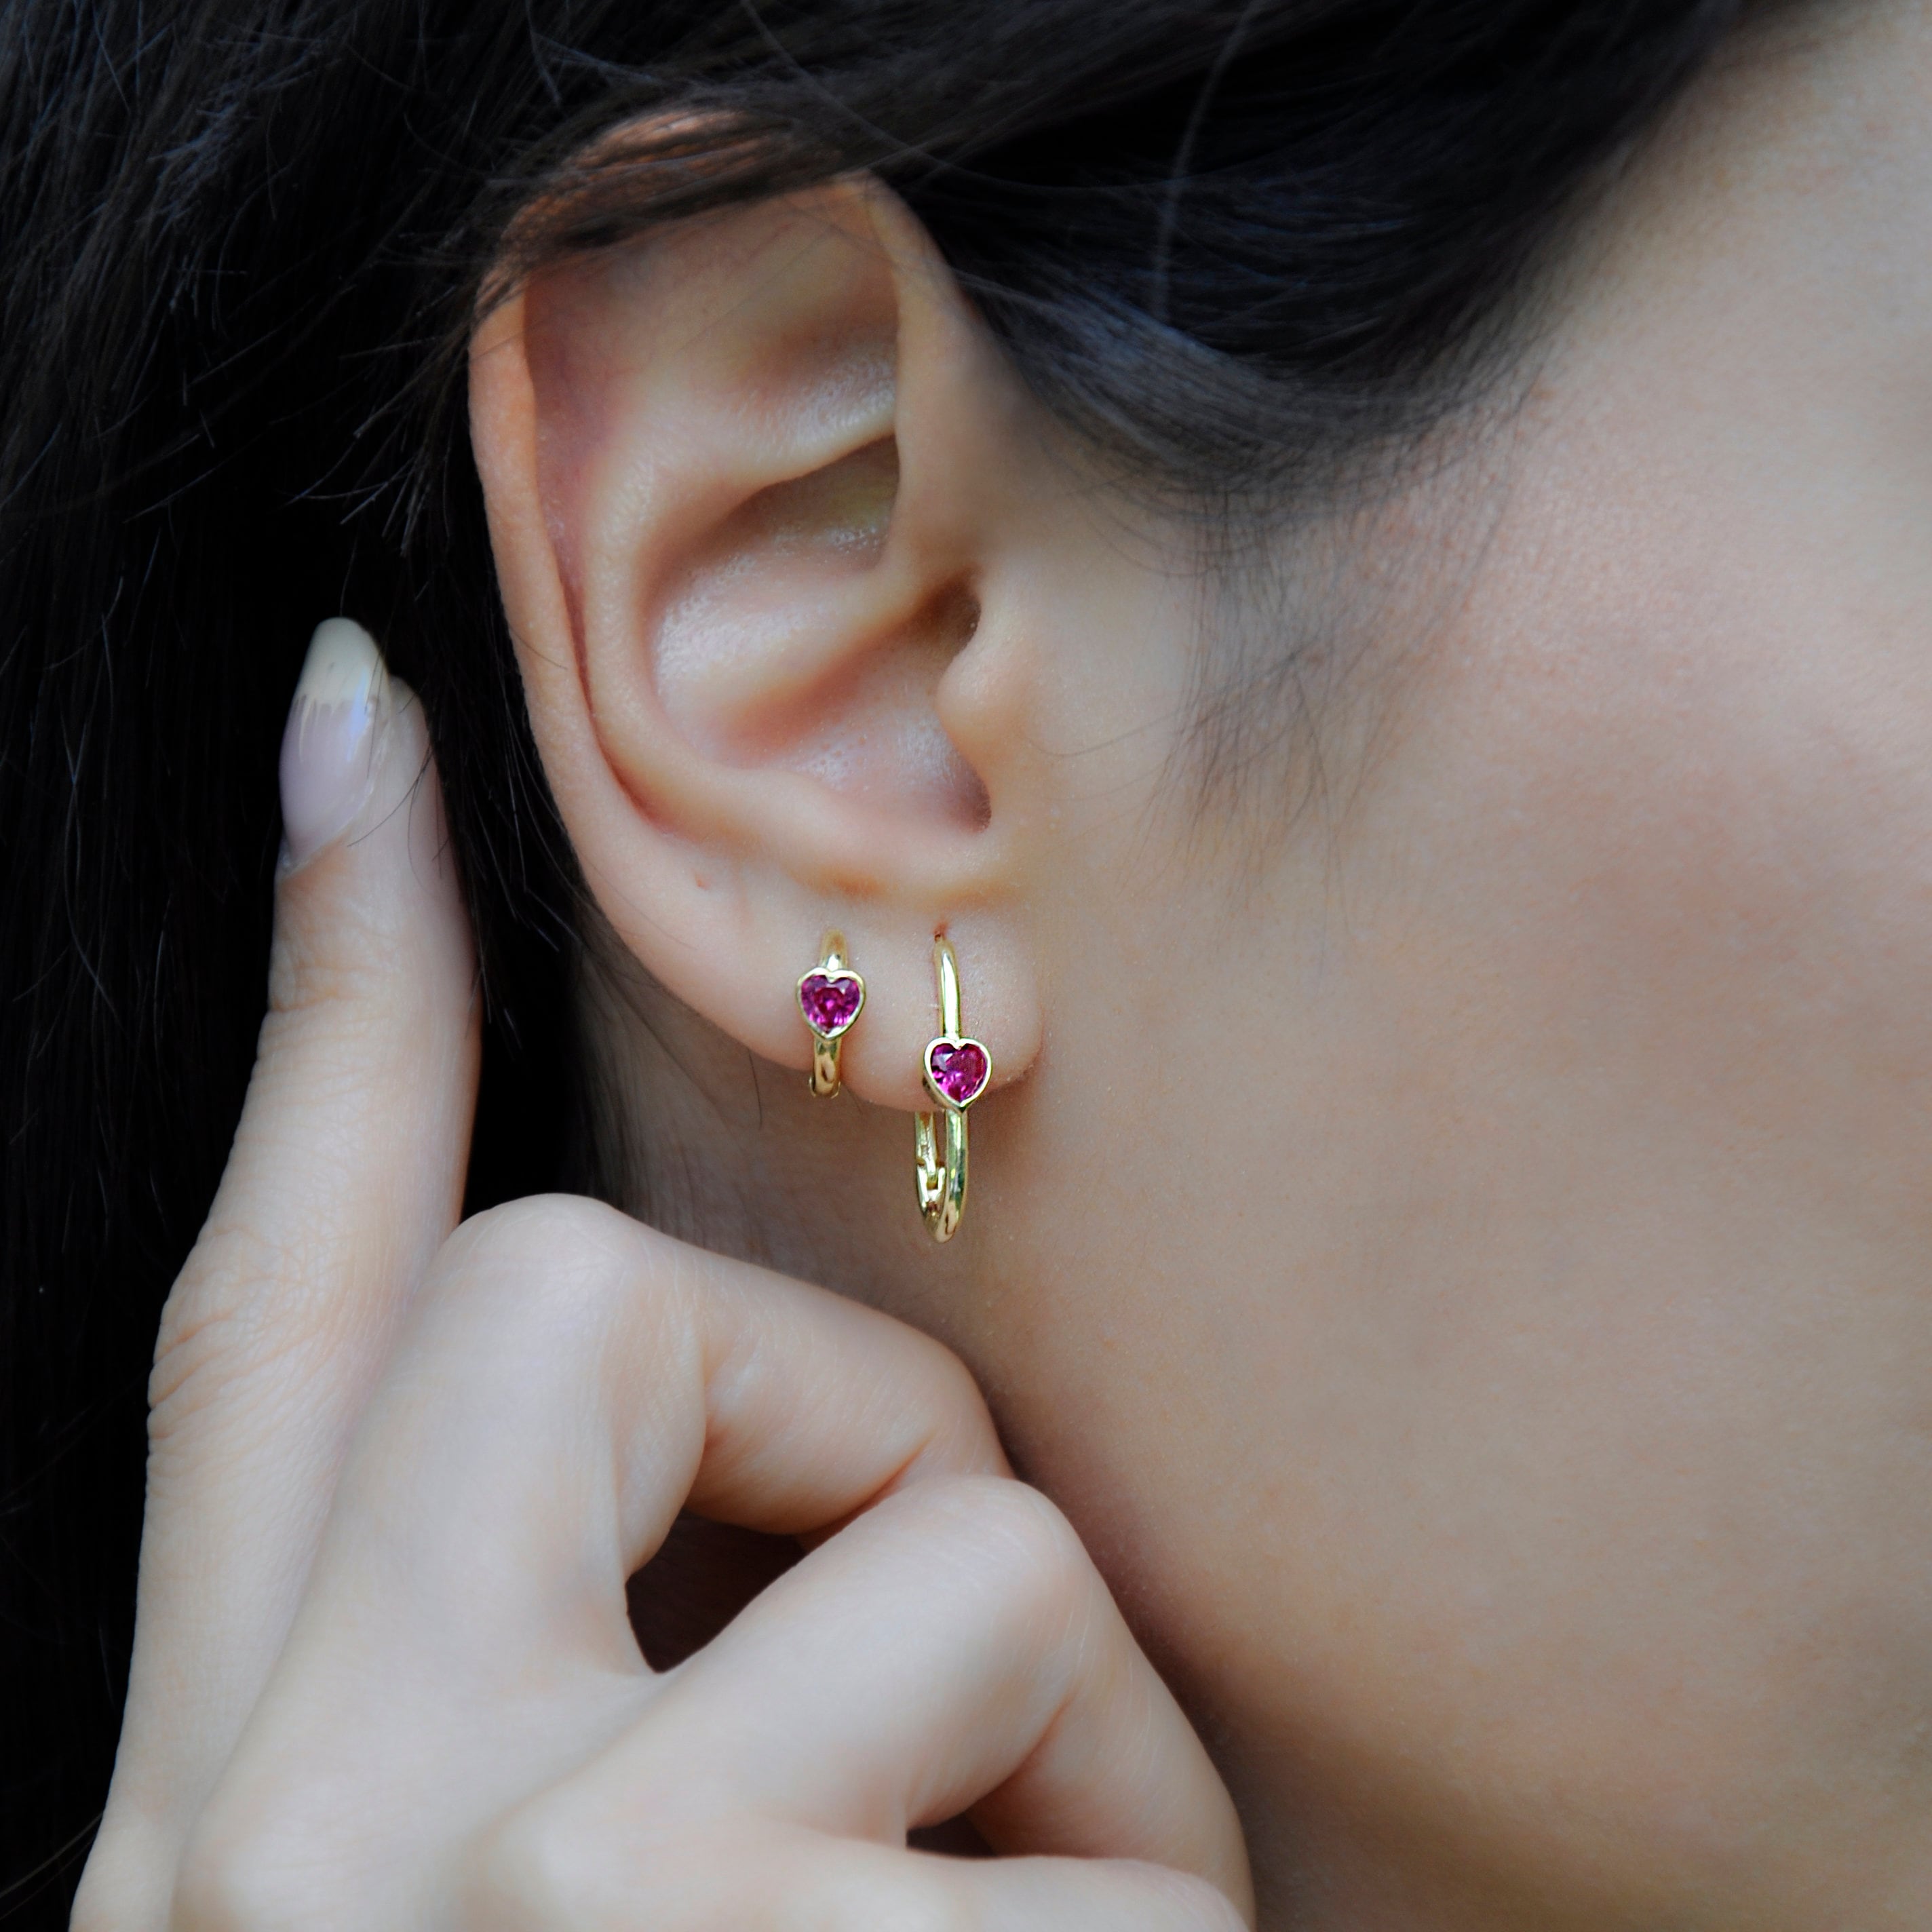 Buy Double Piercing Earring Stud Earring Earring Set Stack Online in India   Etsy